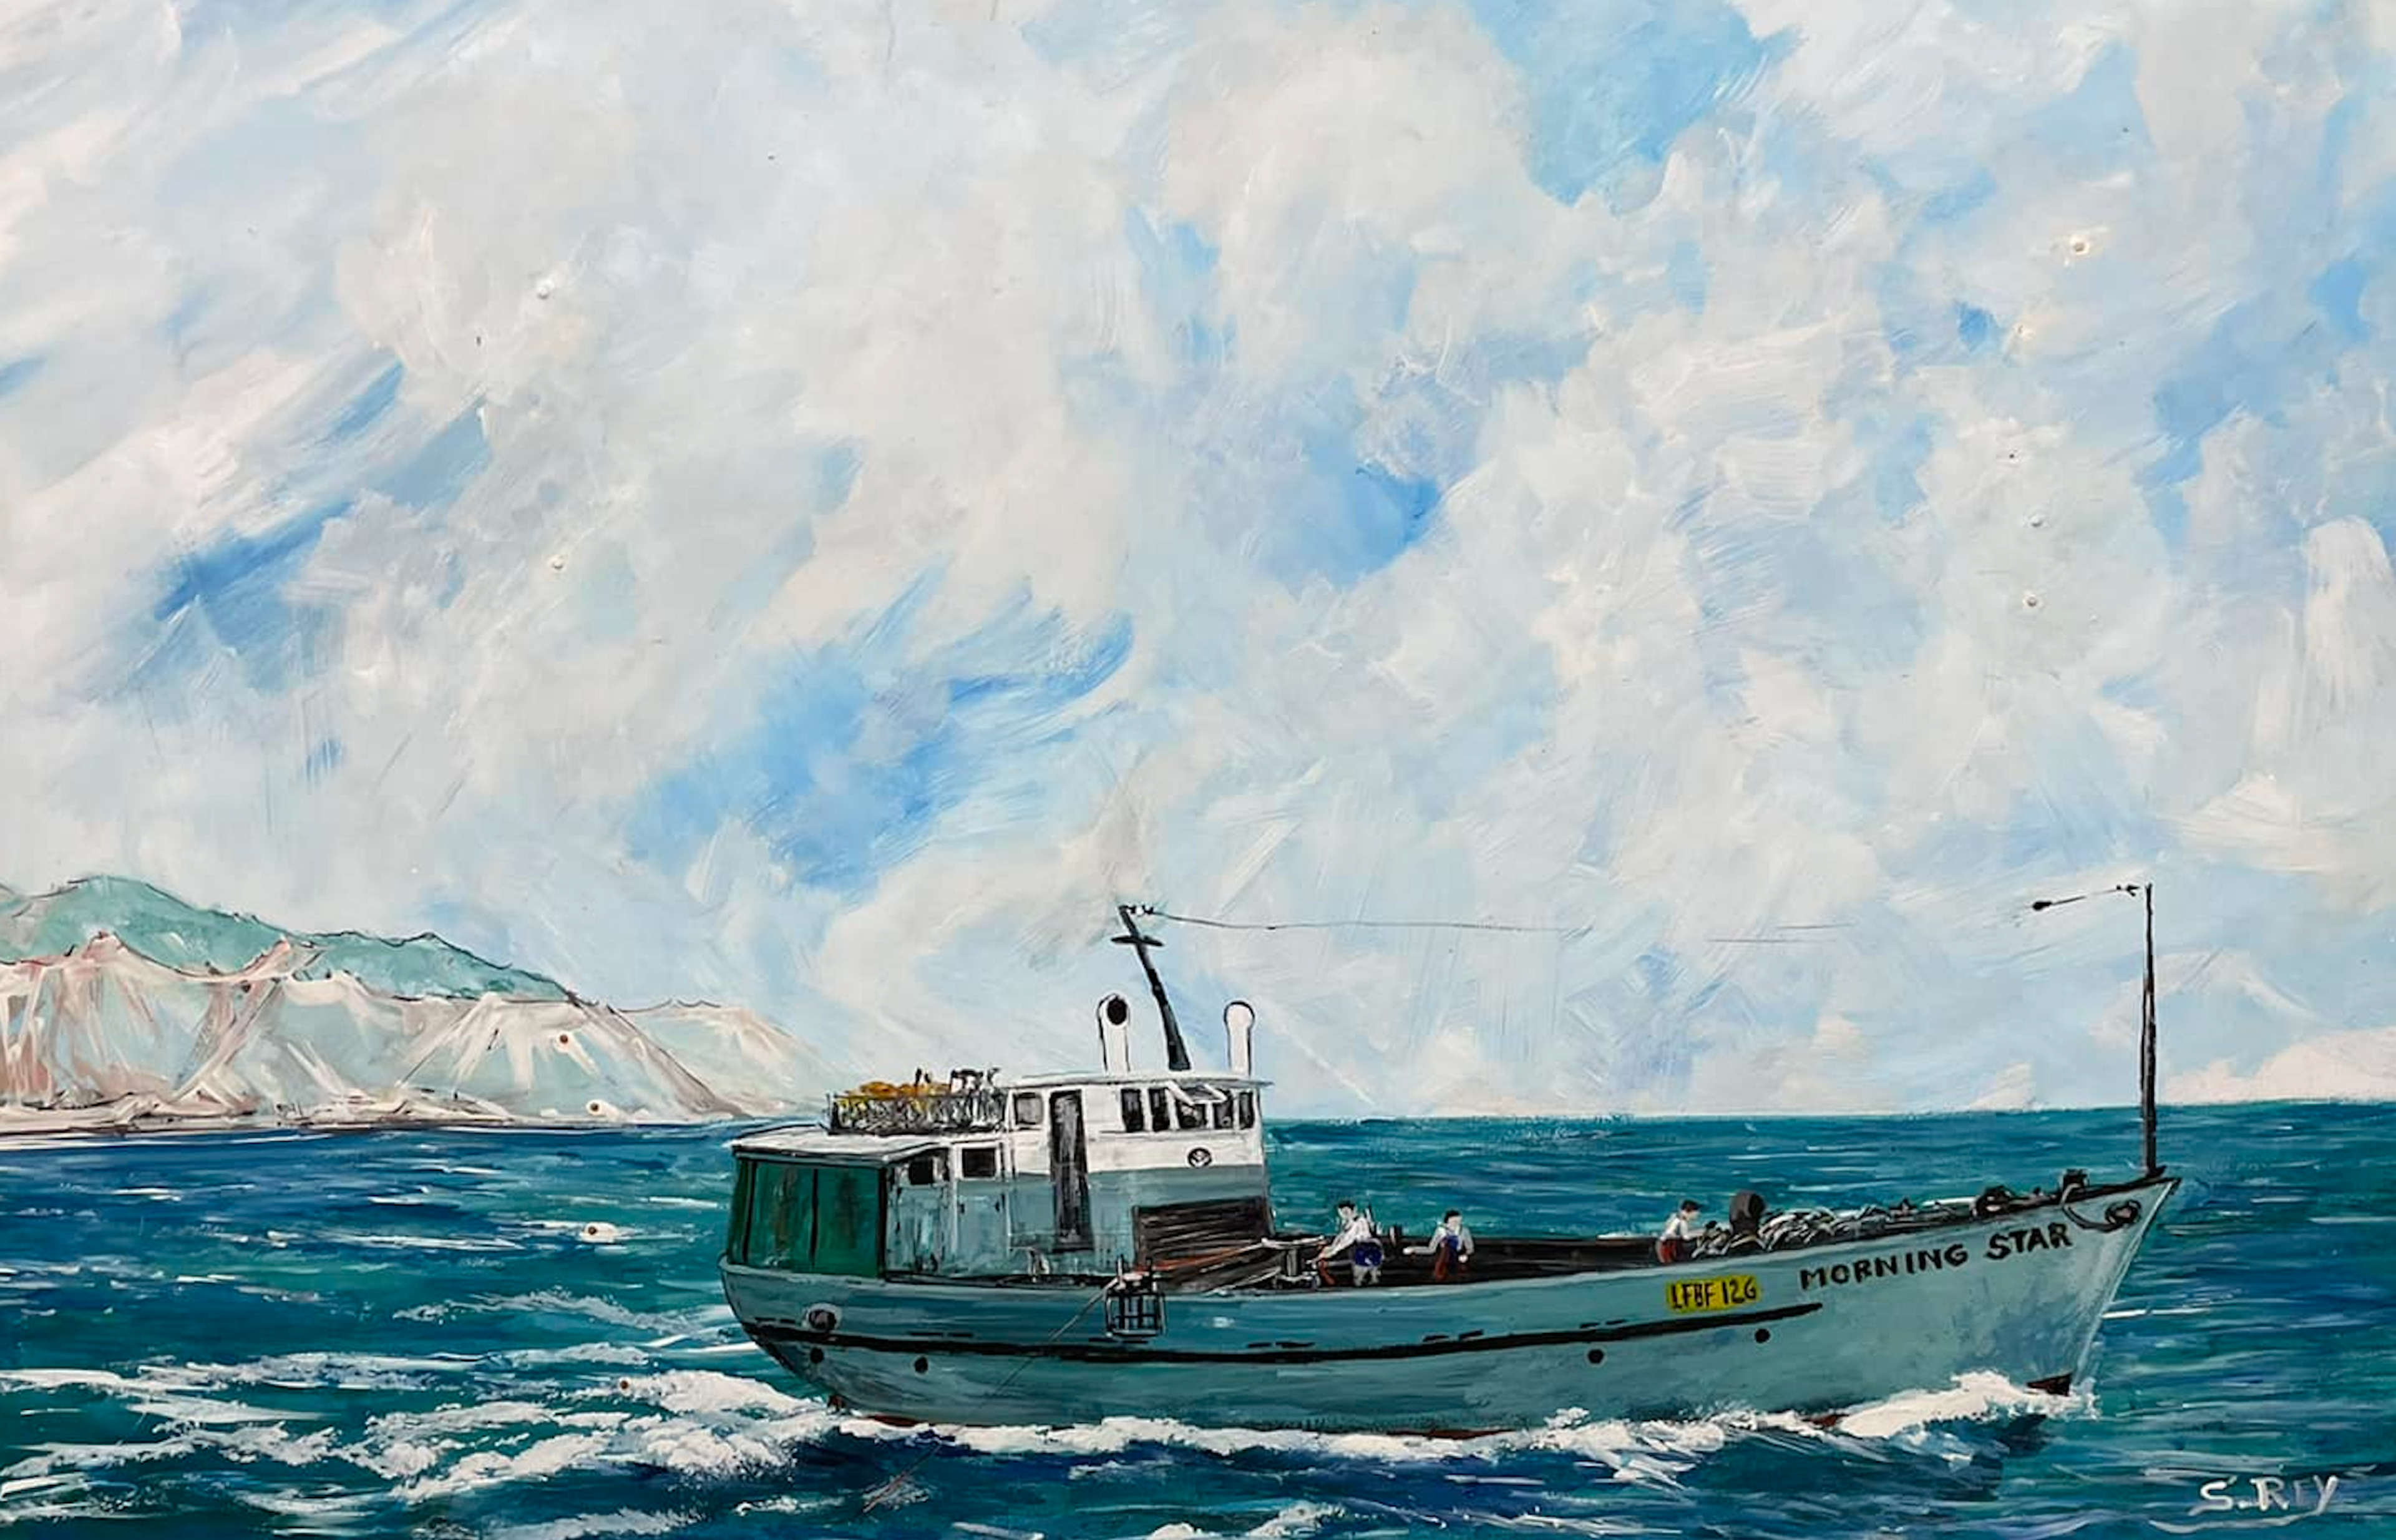 Painting of Morning Star at sea